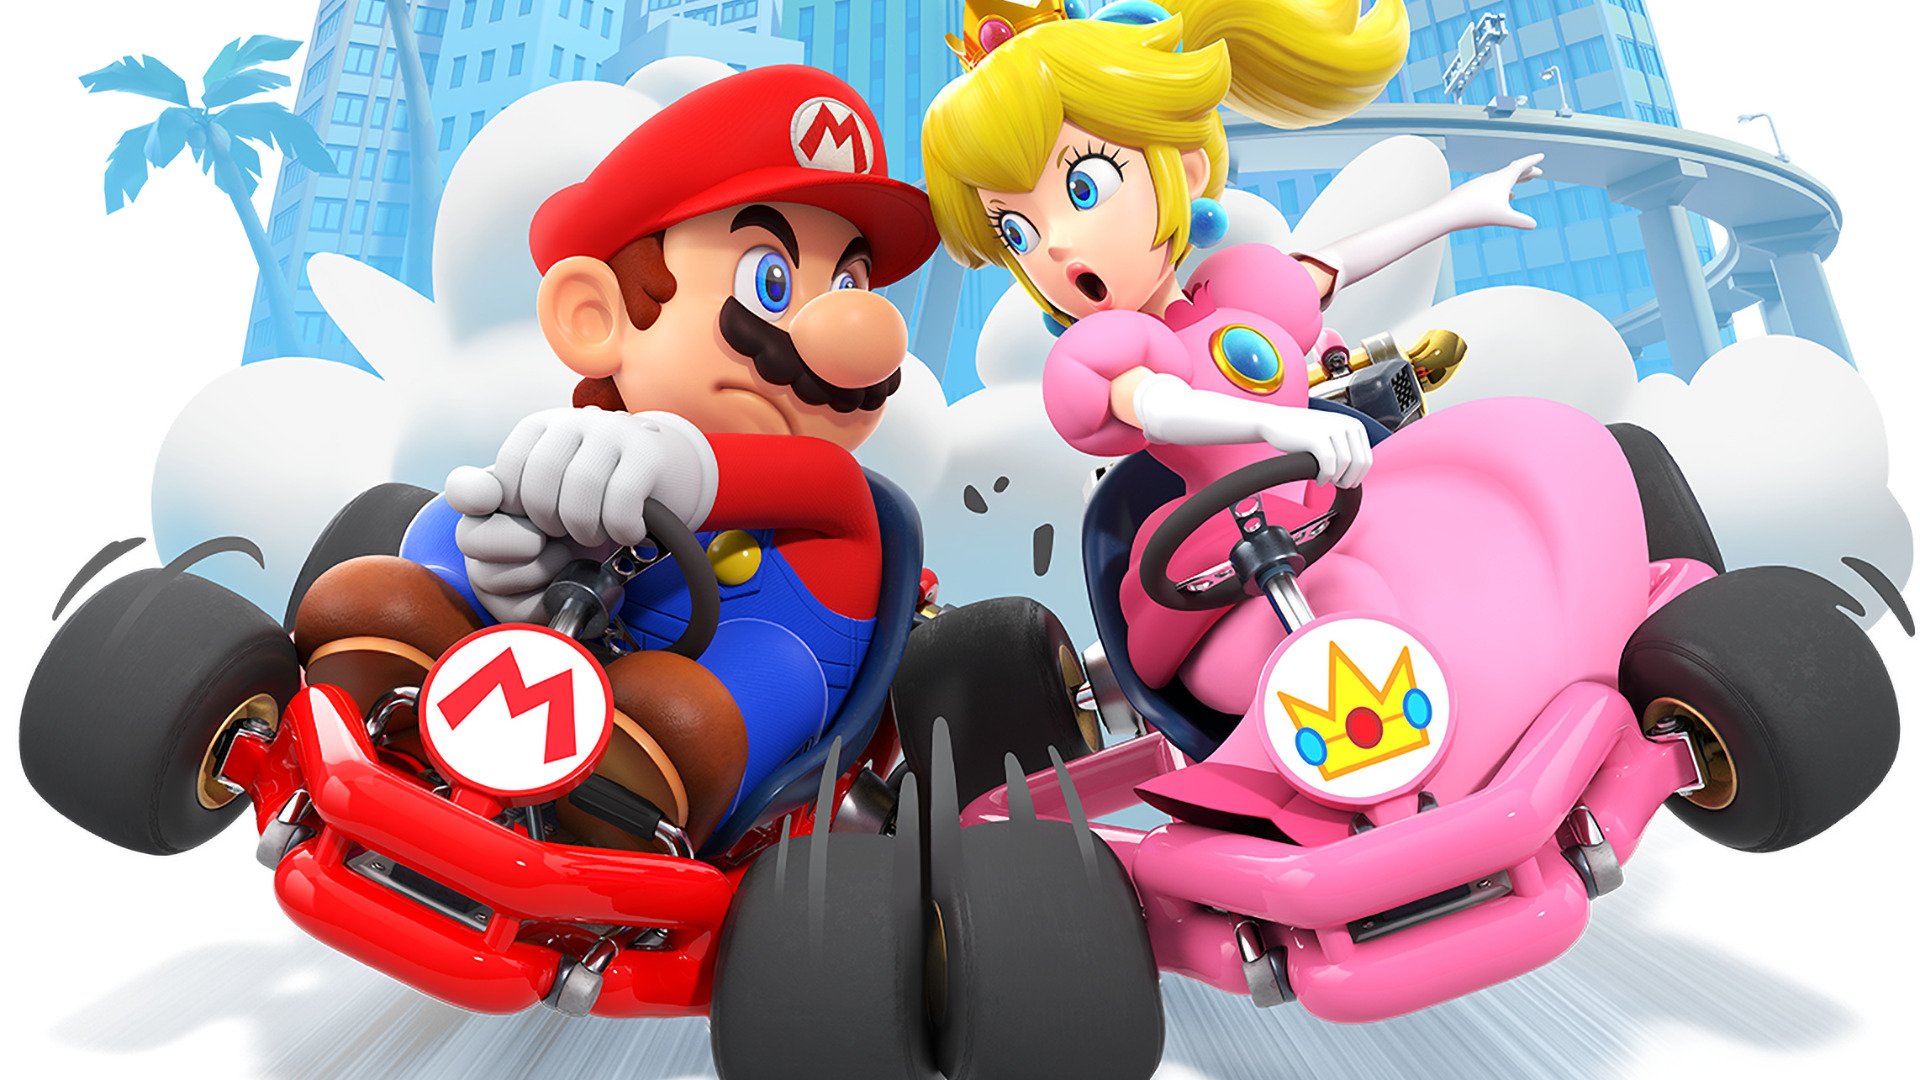 Після 4 років запуску Nintendo припиняє роботу над контентом Mario Kart Tour